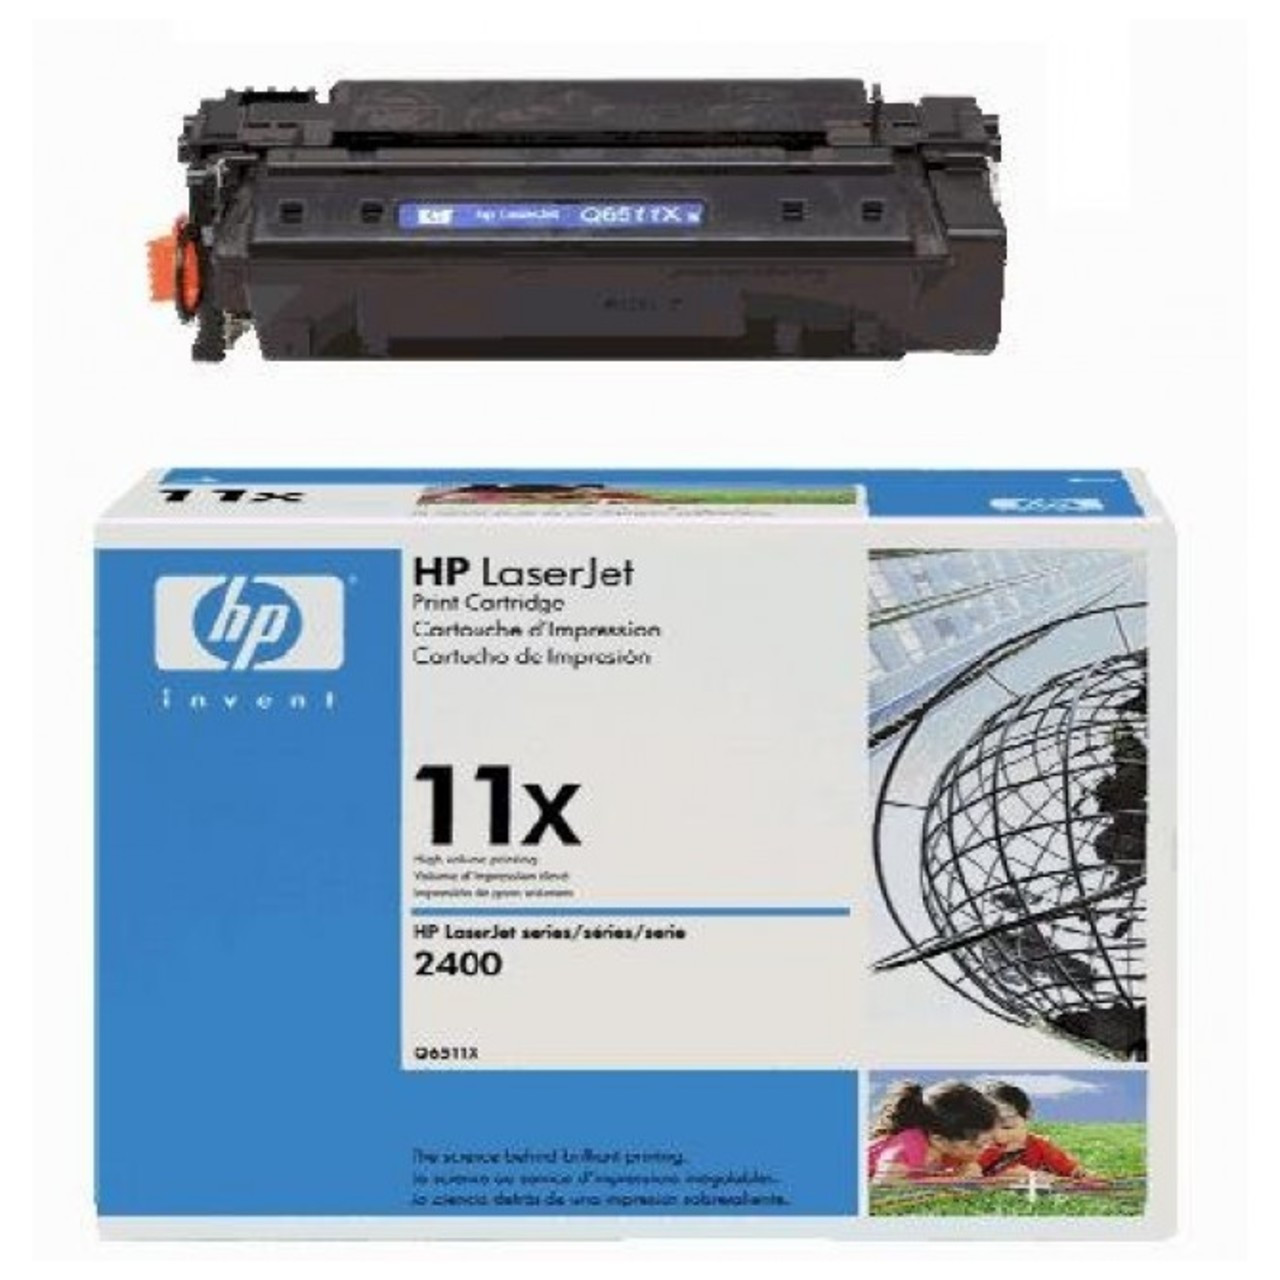 Заправка картриджа №11X HP LaserJet 2400/ 2410/ 2420/ 2430 (Q6511X)